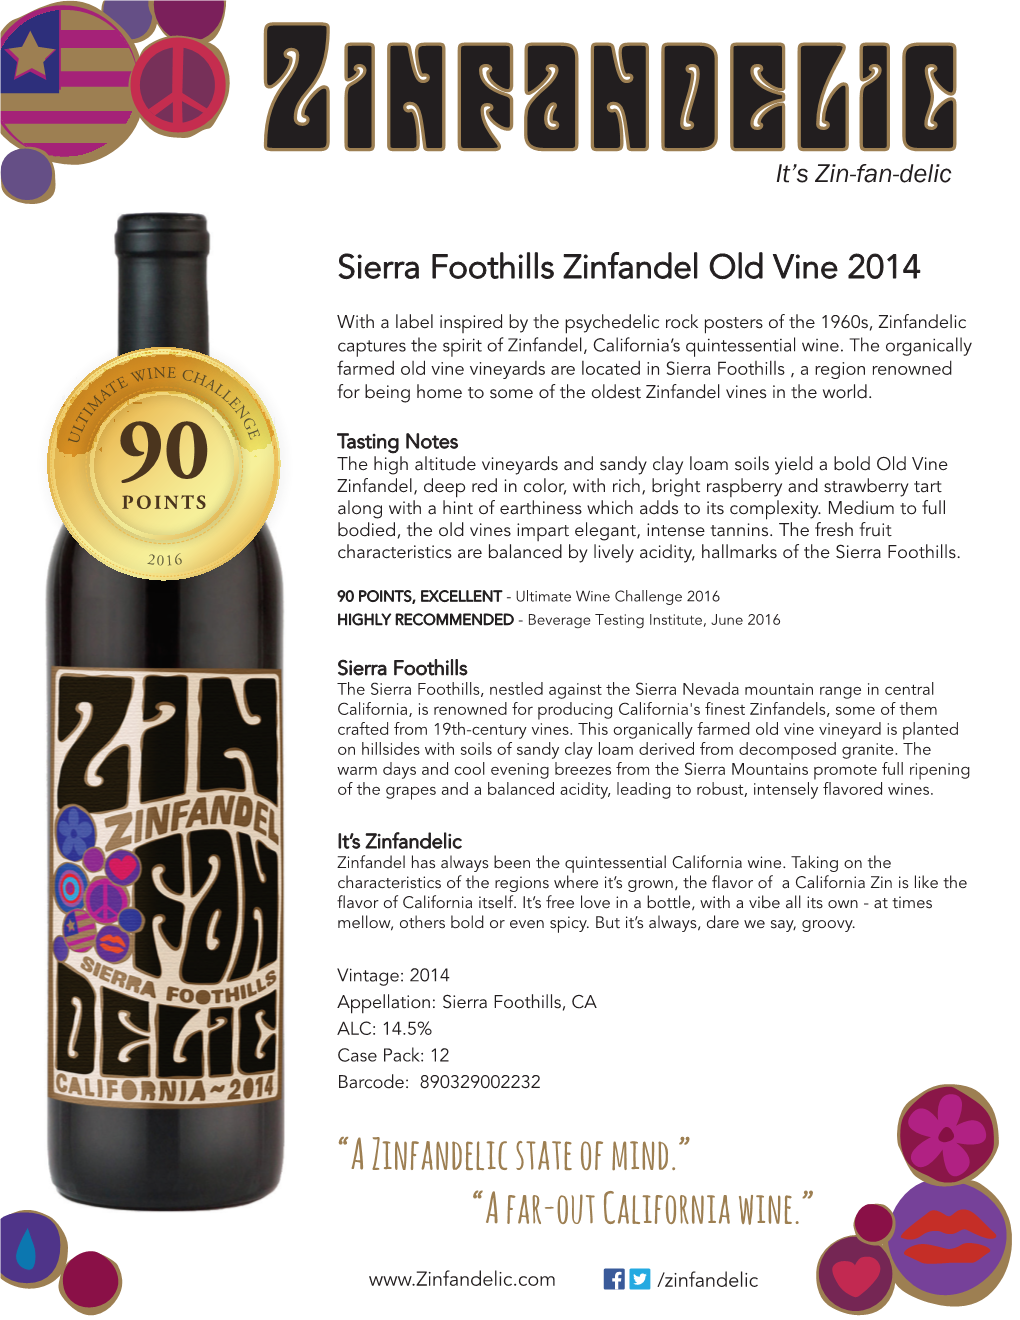 2014 Sierra Foothills Old Vine Zinfandel Tasting Notes